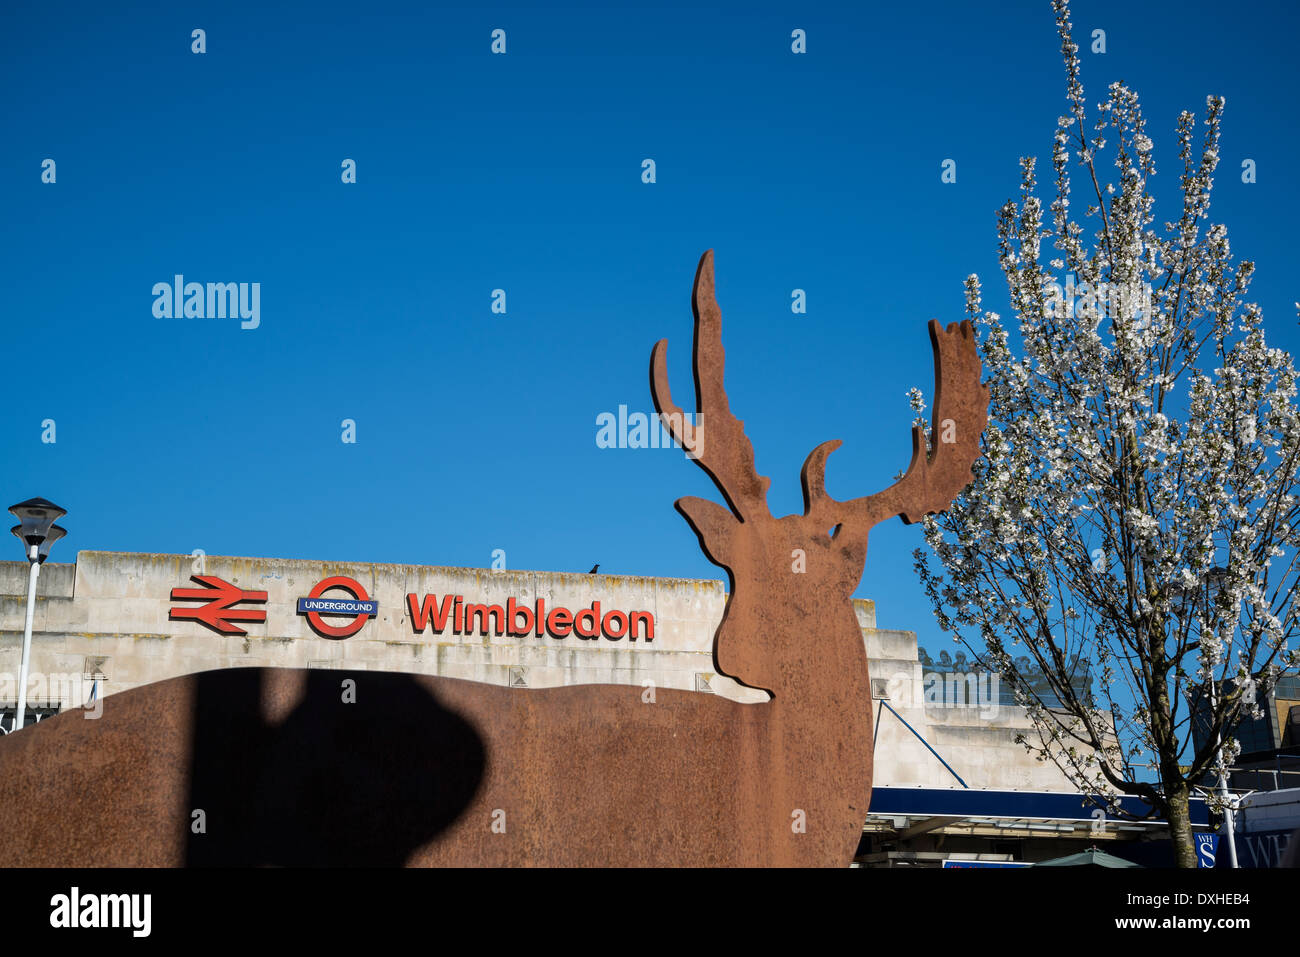 Wimbledon stazione ferroviaria con i cervi scultura e albero in fiore, London, Regno Unito Foto Stock